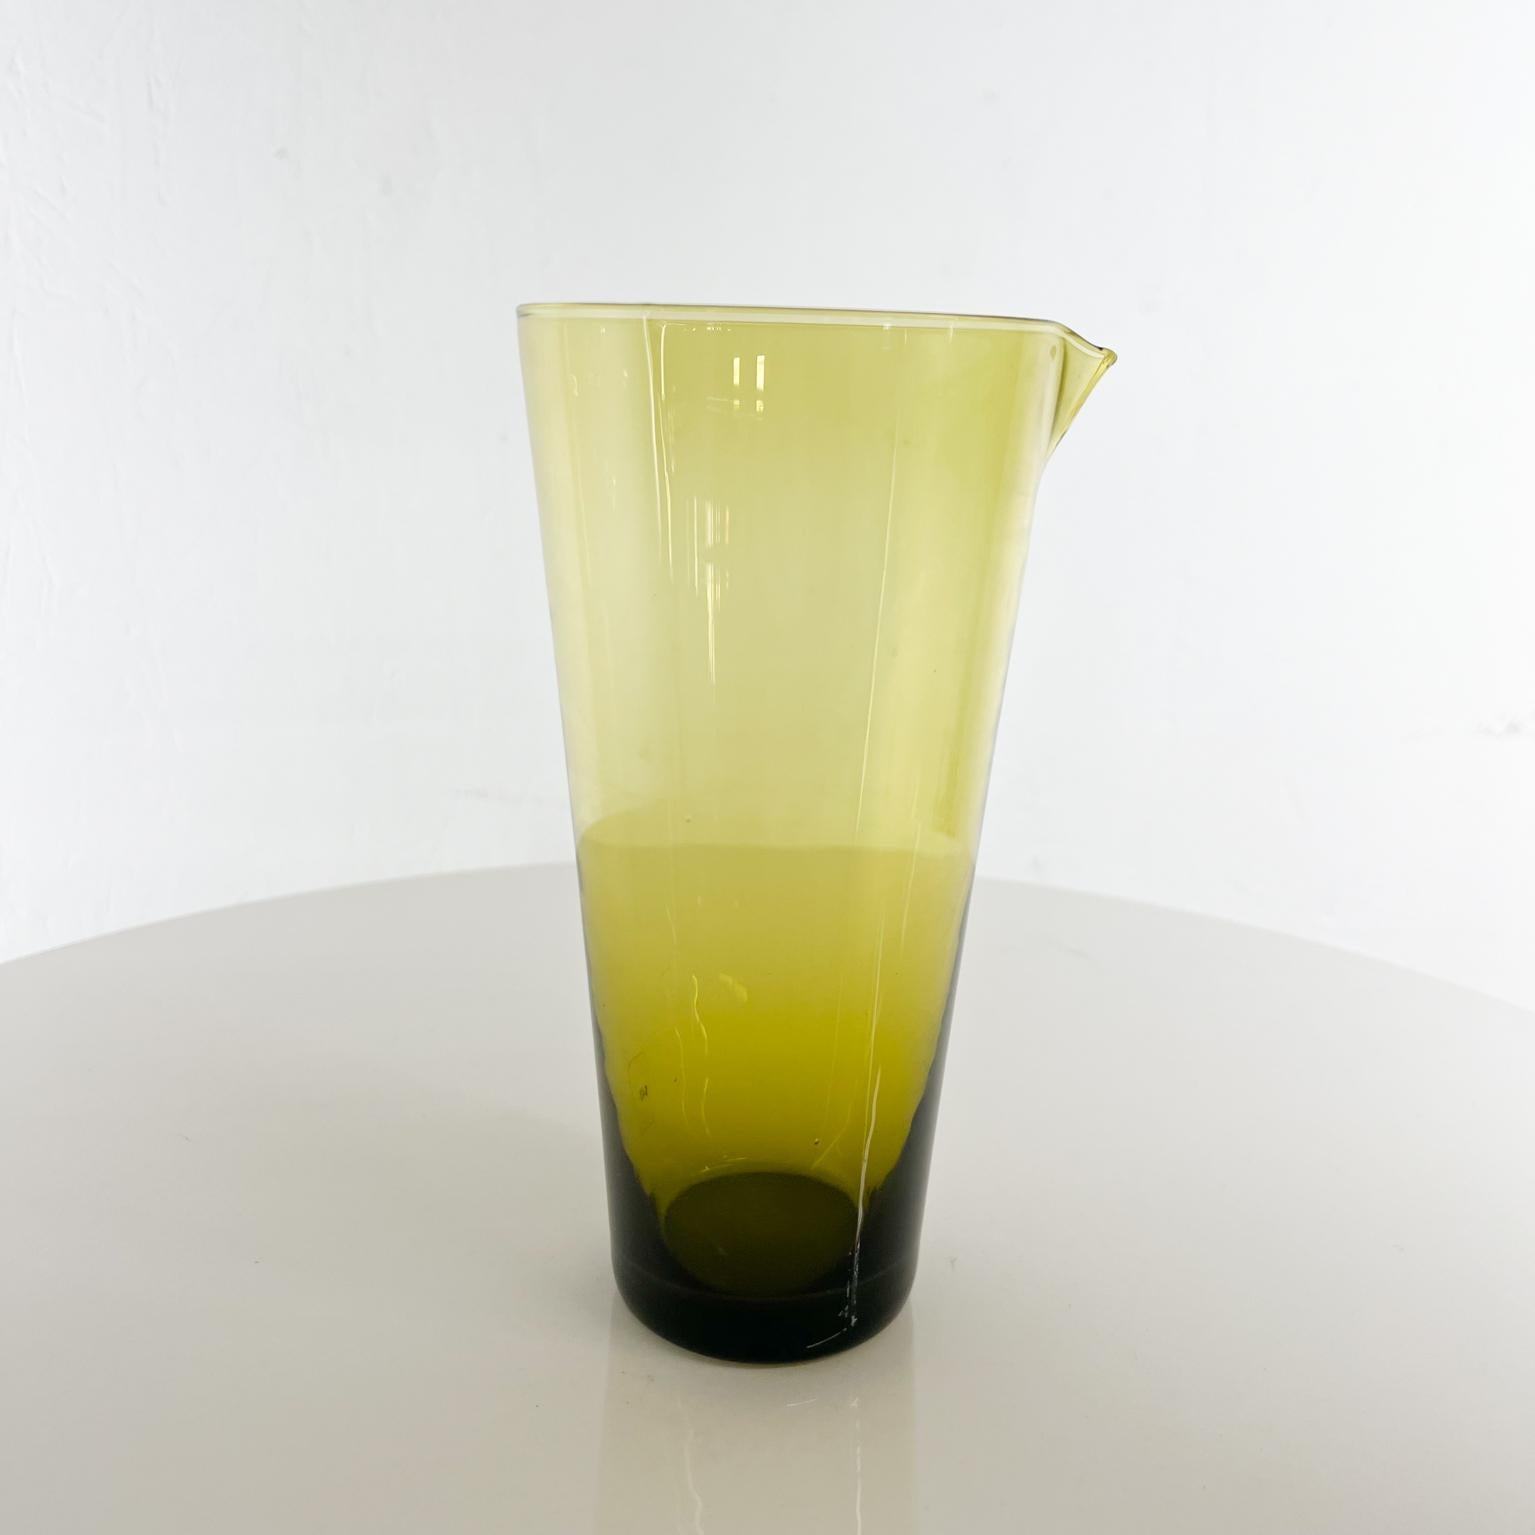 1960 The Modern Scandinavian glass green Juice Carafe Iittala Finland
Mesures : 8 de haut x 4 de diamètre au plus large
Non marqué
Etat original d'occasion.
Voir nos images fournies.
 